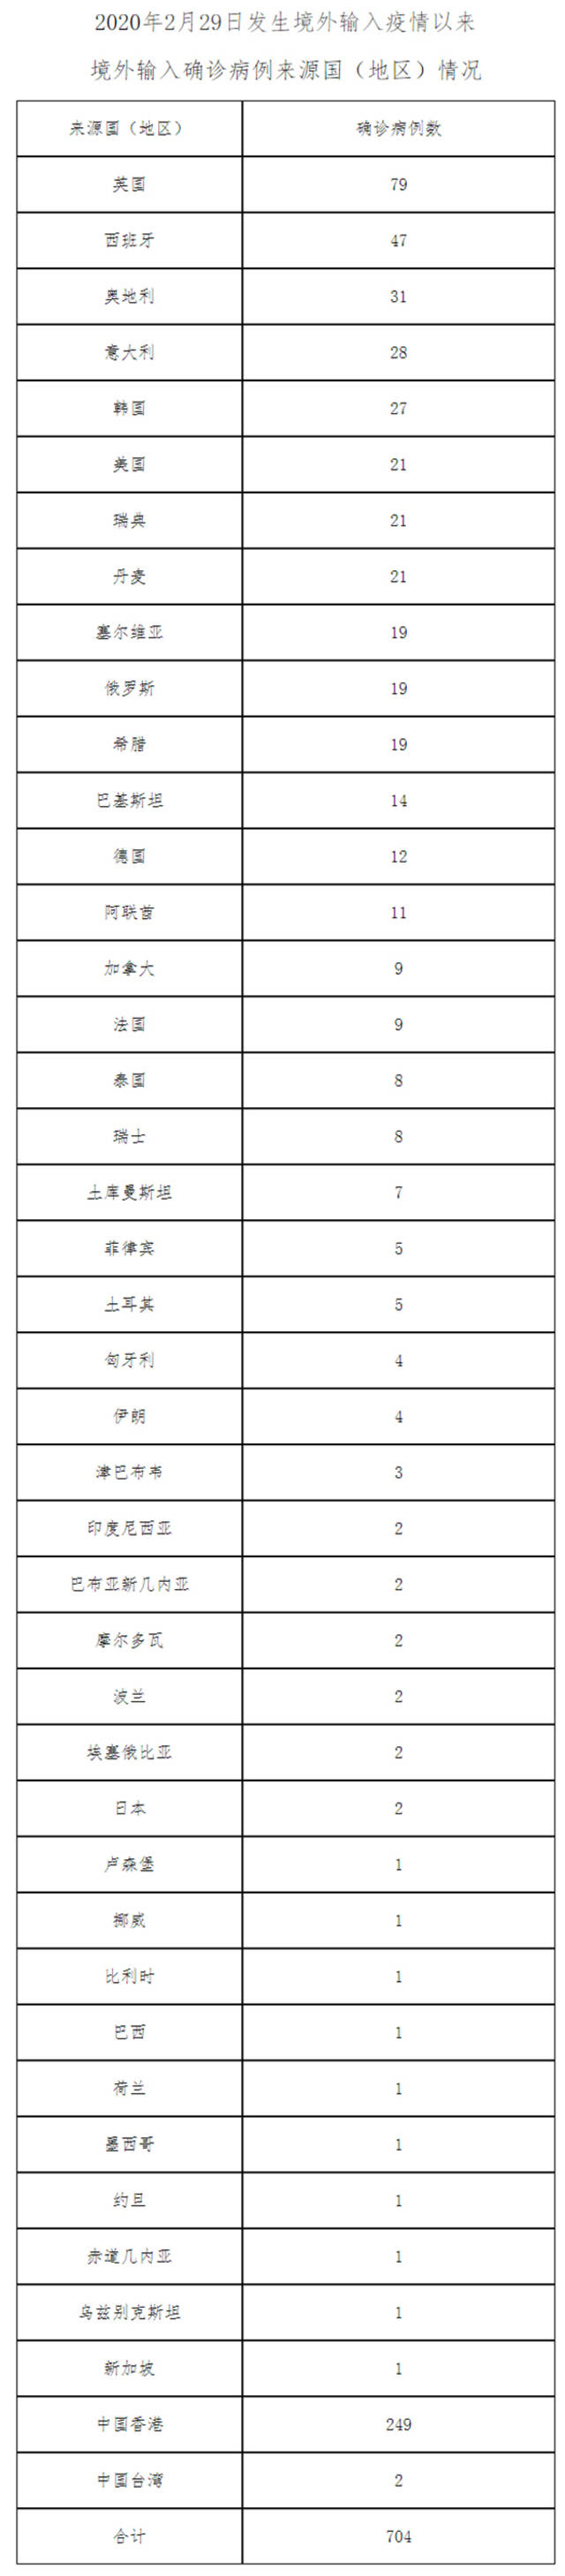 北京4月25日新增32例本土确诊病例、1例本土无症状感染者 治愈出院2例